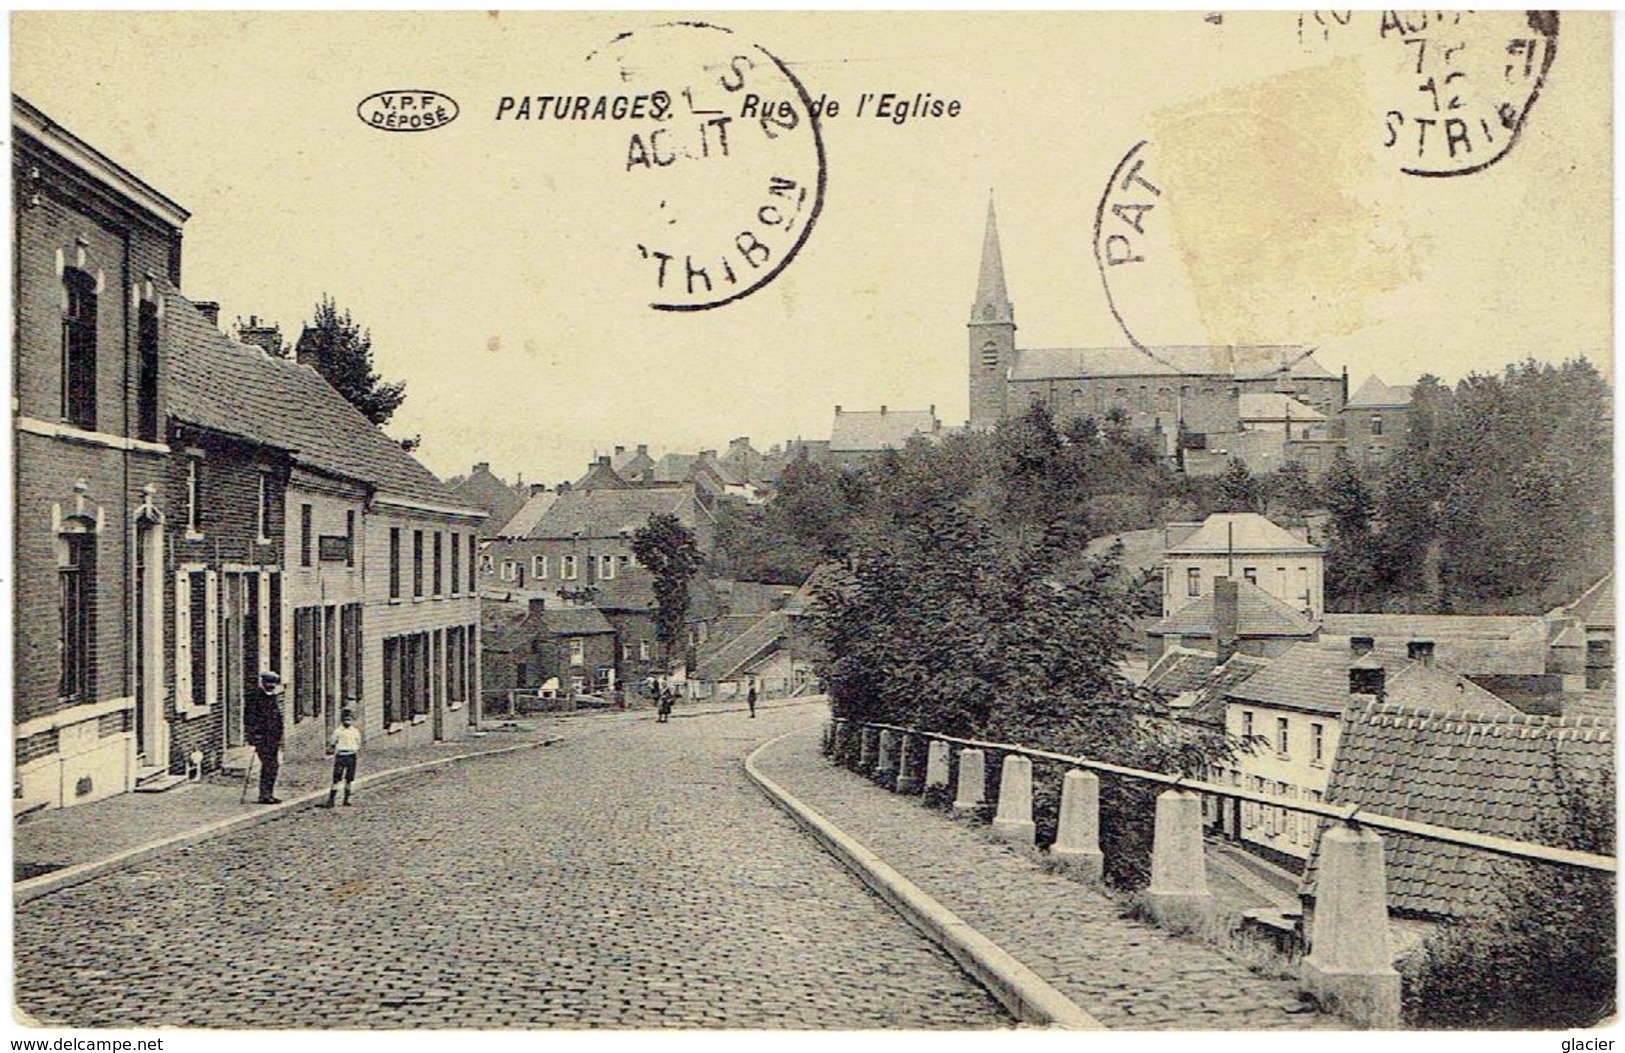 PATURAGES - Colfontaine - Rue De L'Eglise - Phototypie Préaux Frères à Ghlin - Colfontaine